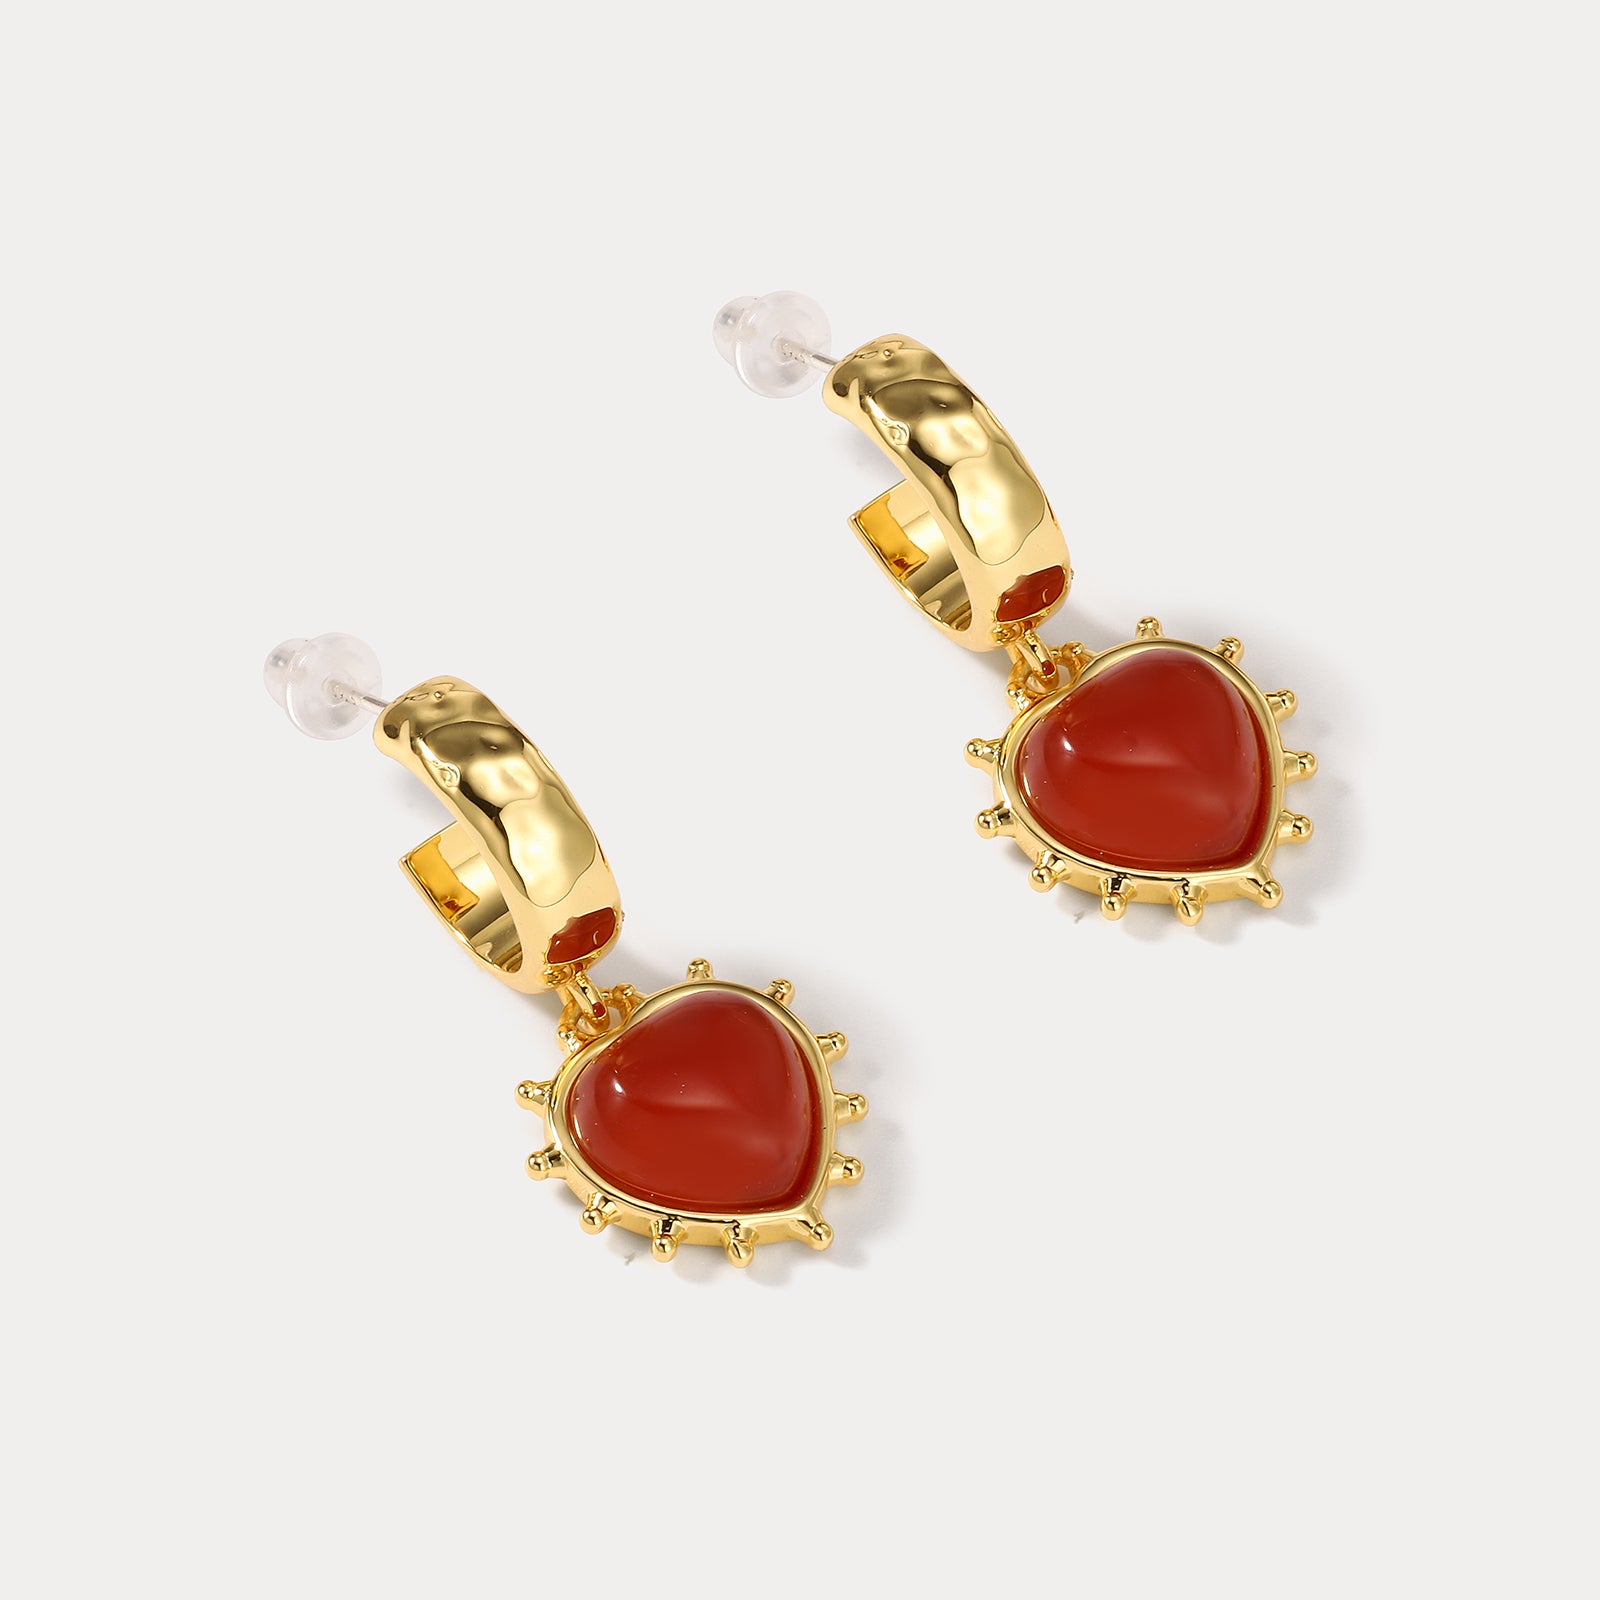 Romantic Heart Burgundy Dainty Earrings